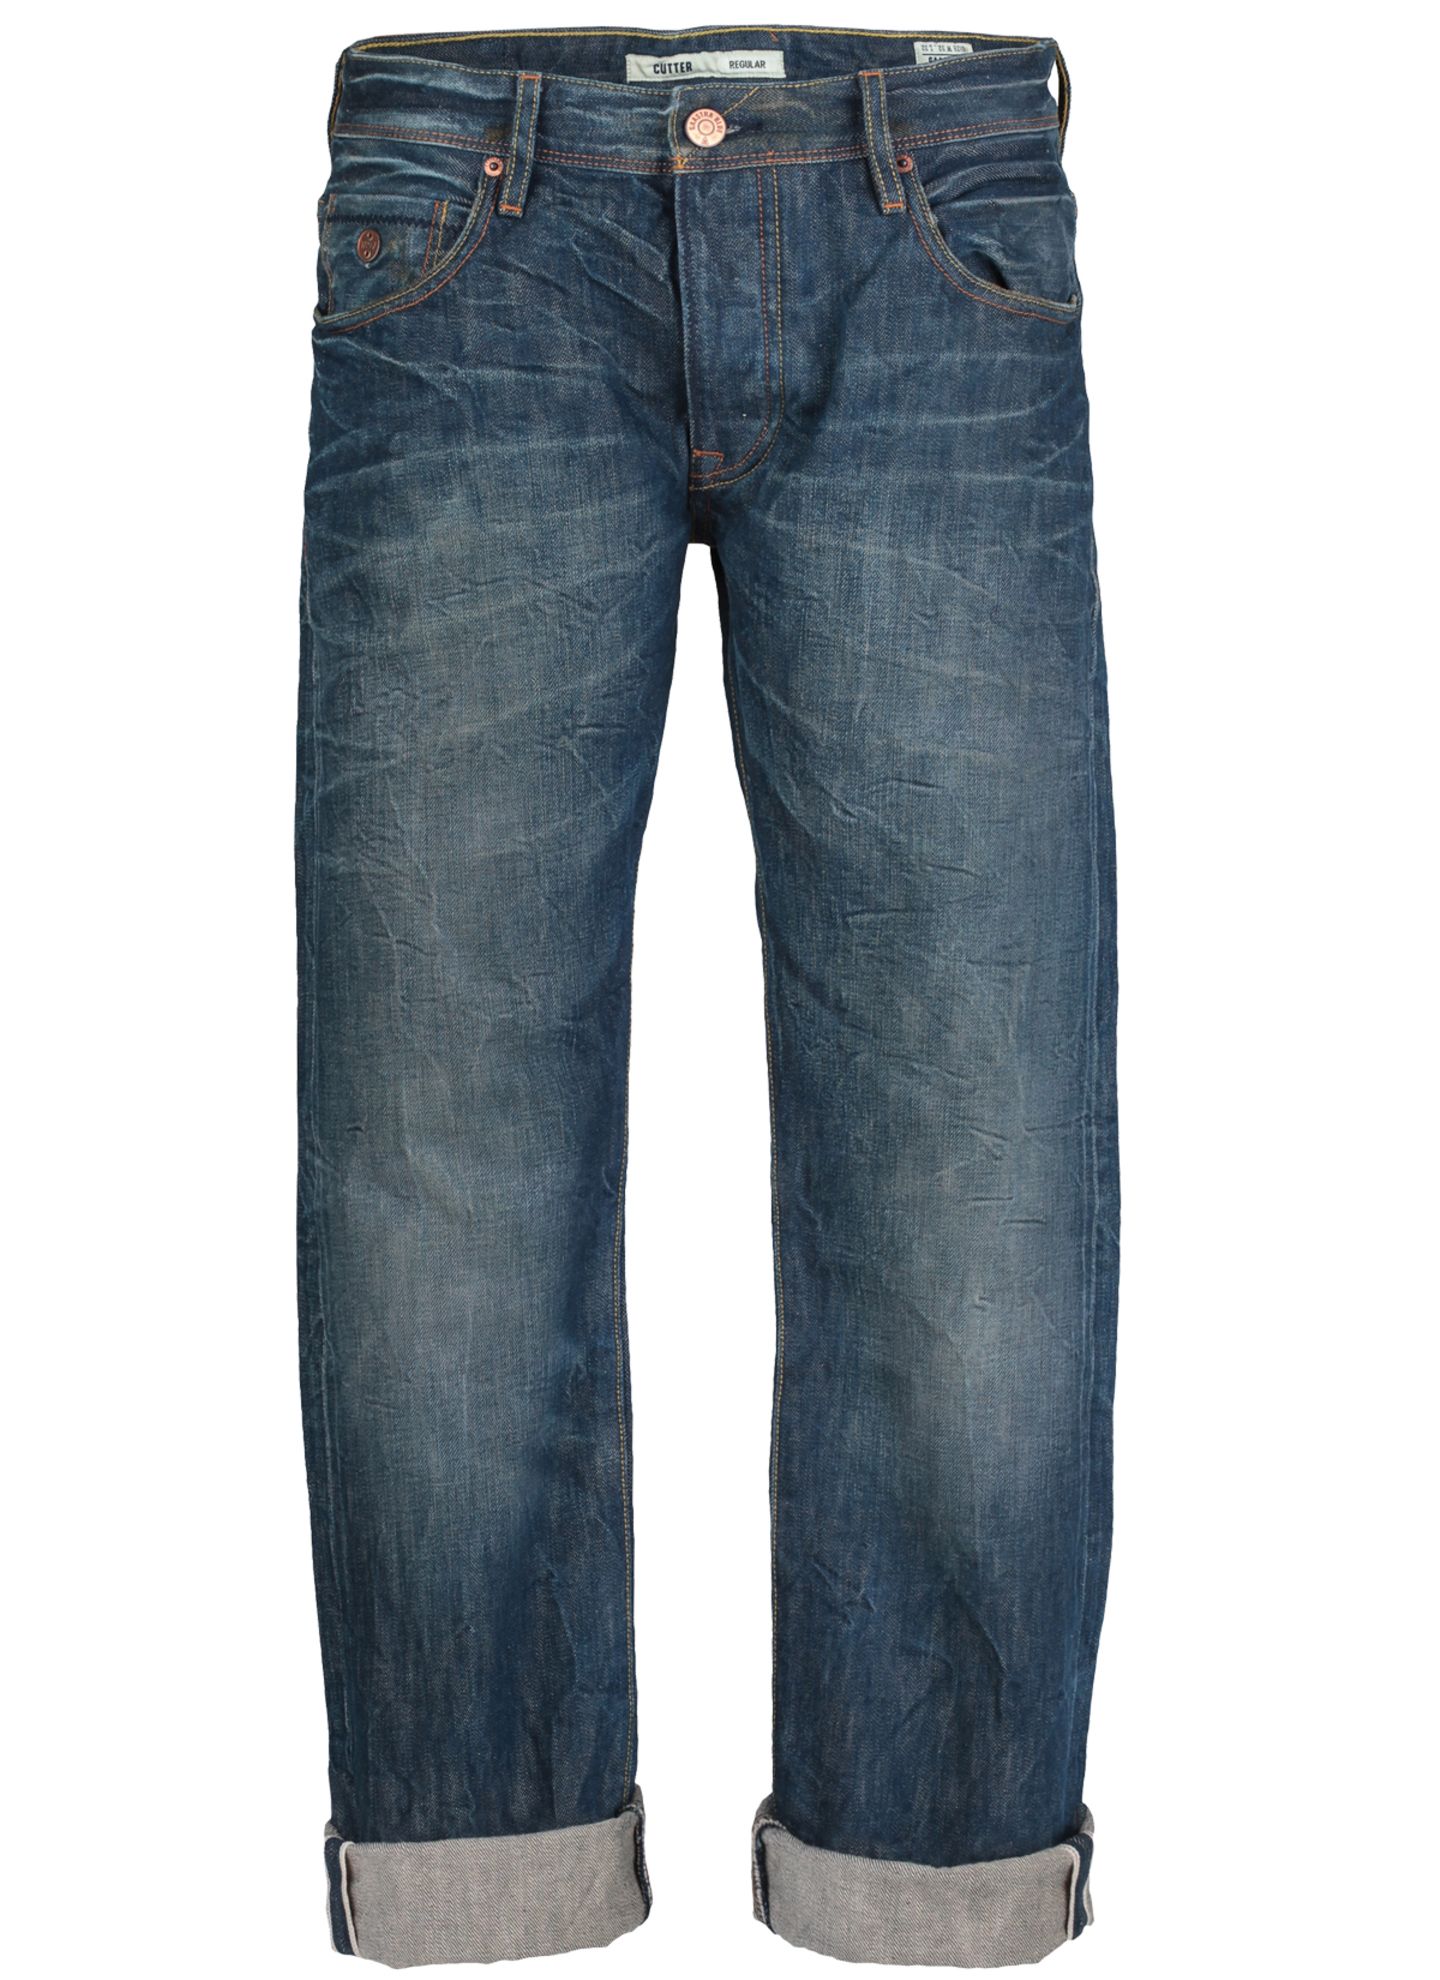 Verwaschen und hochgekrempelt, Jeans von Gaastra Blue, ca. 160 Euro